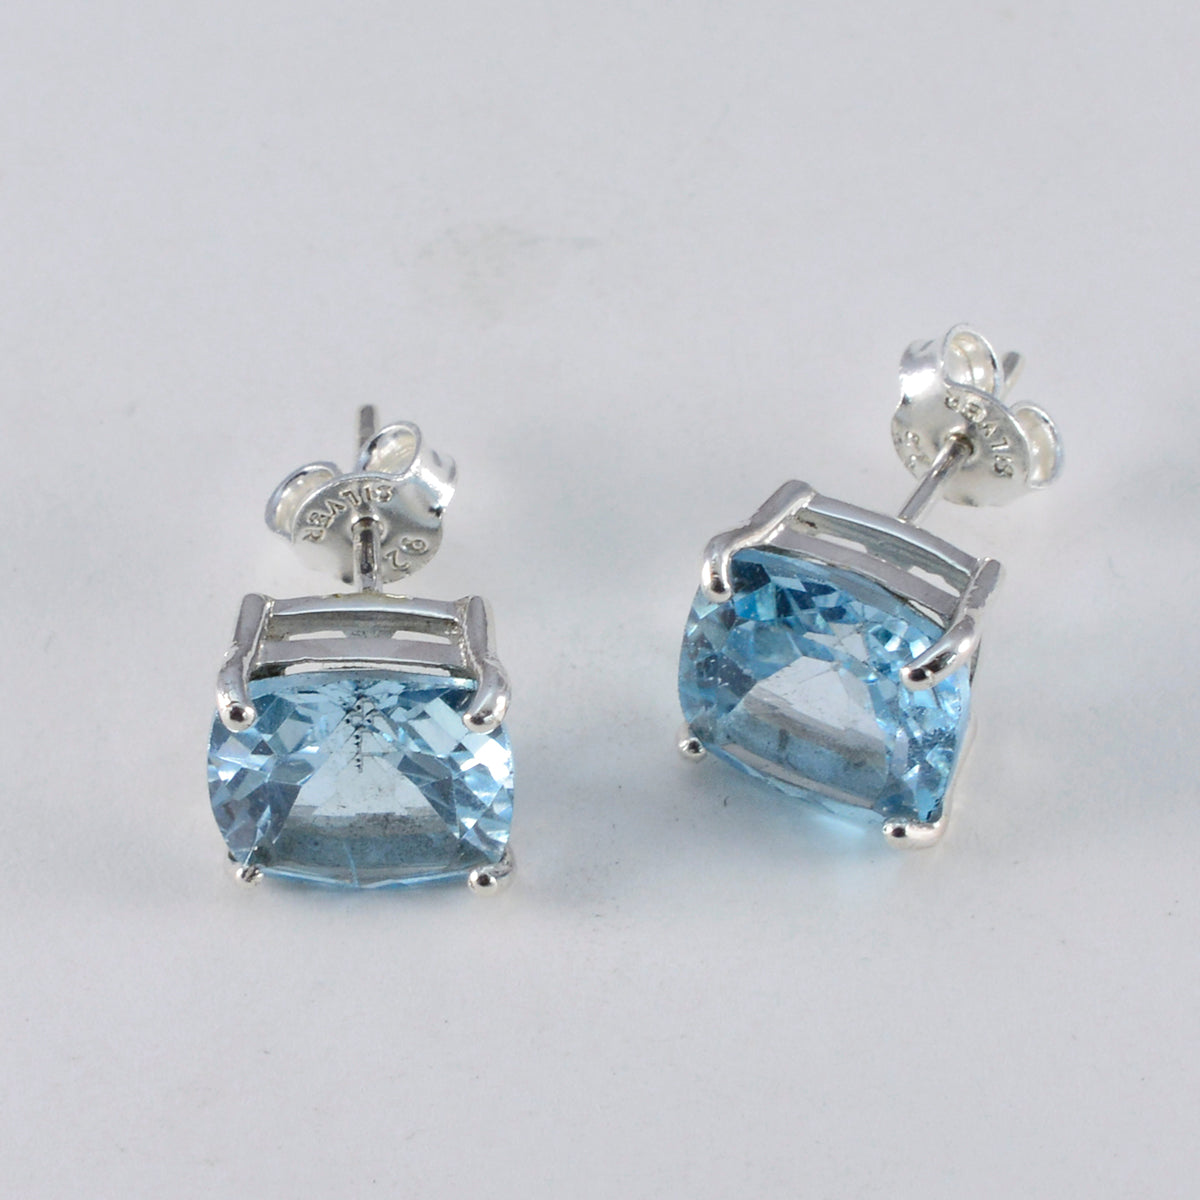 riyo comely 925 sterling silver örhänge för syster blå topas örhänge infattning blå örhänge örhänge